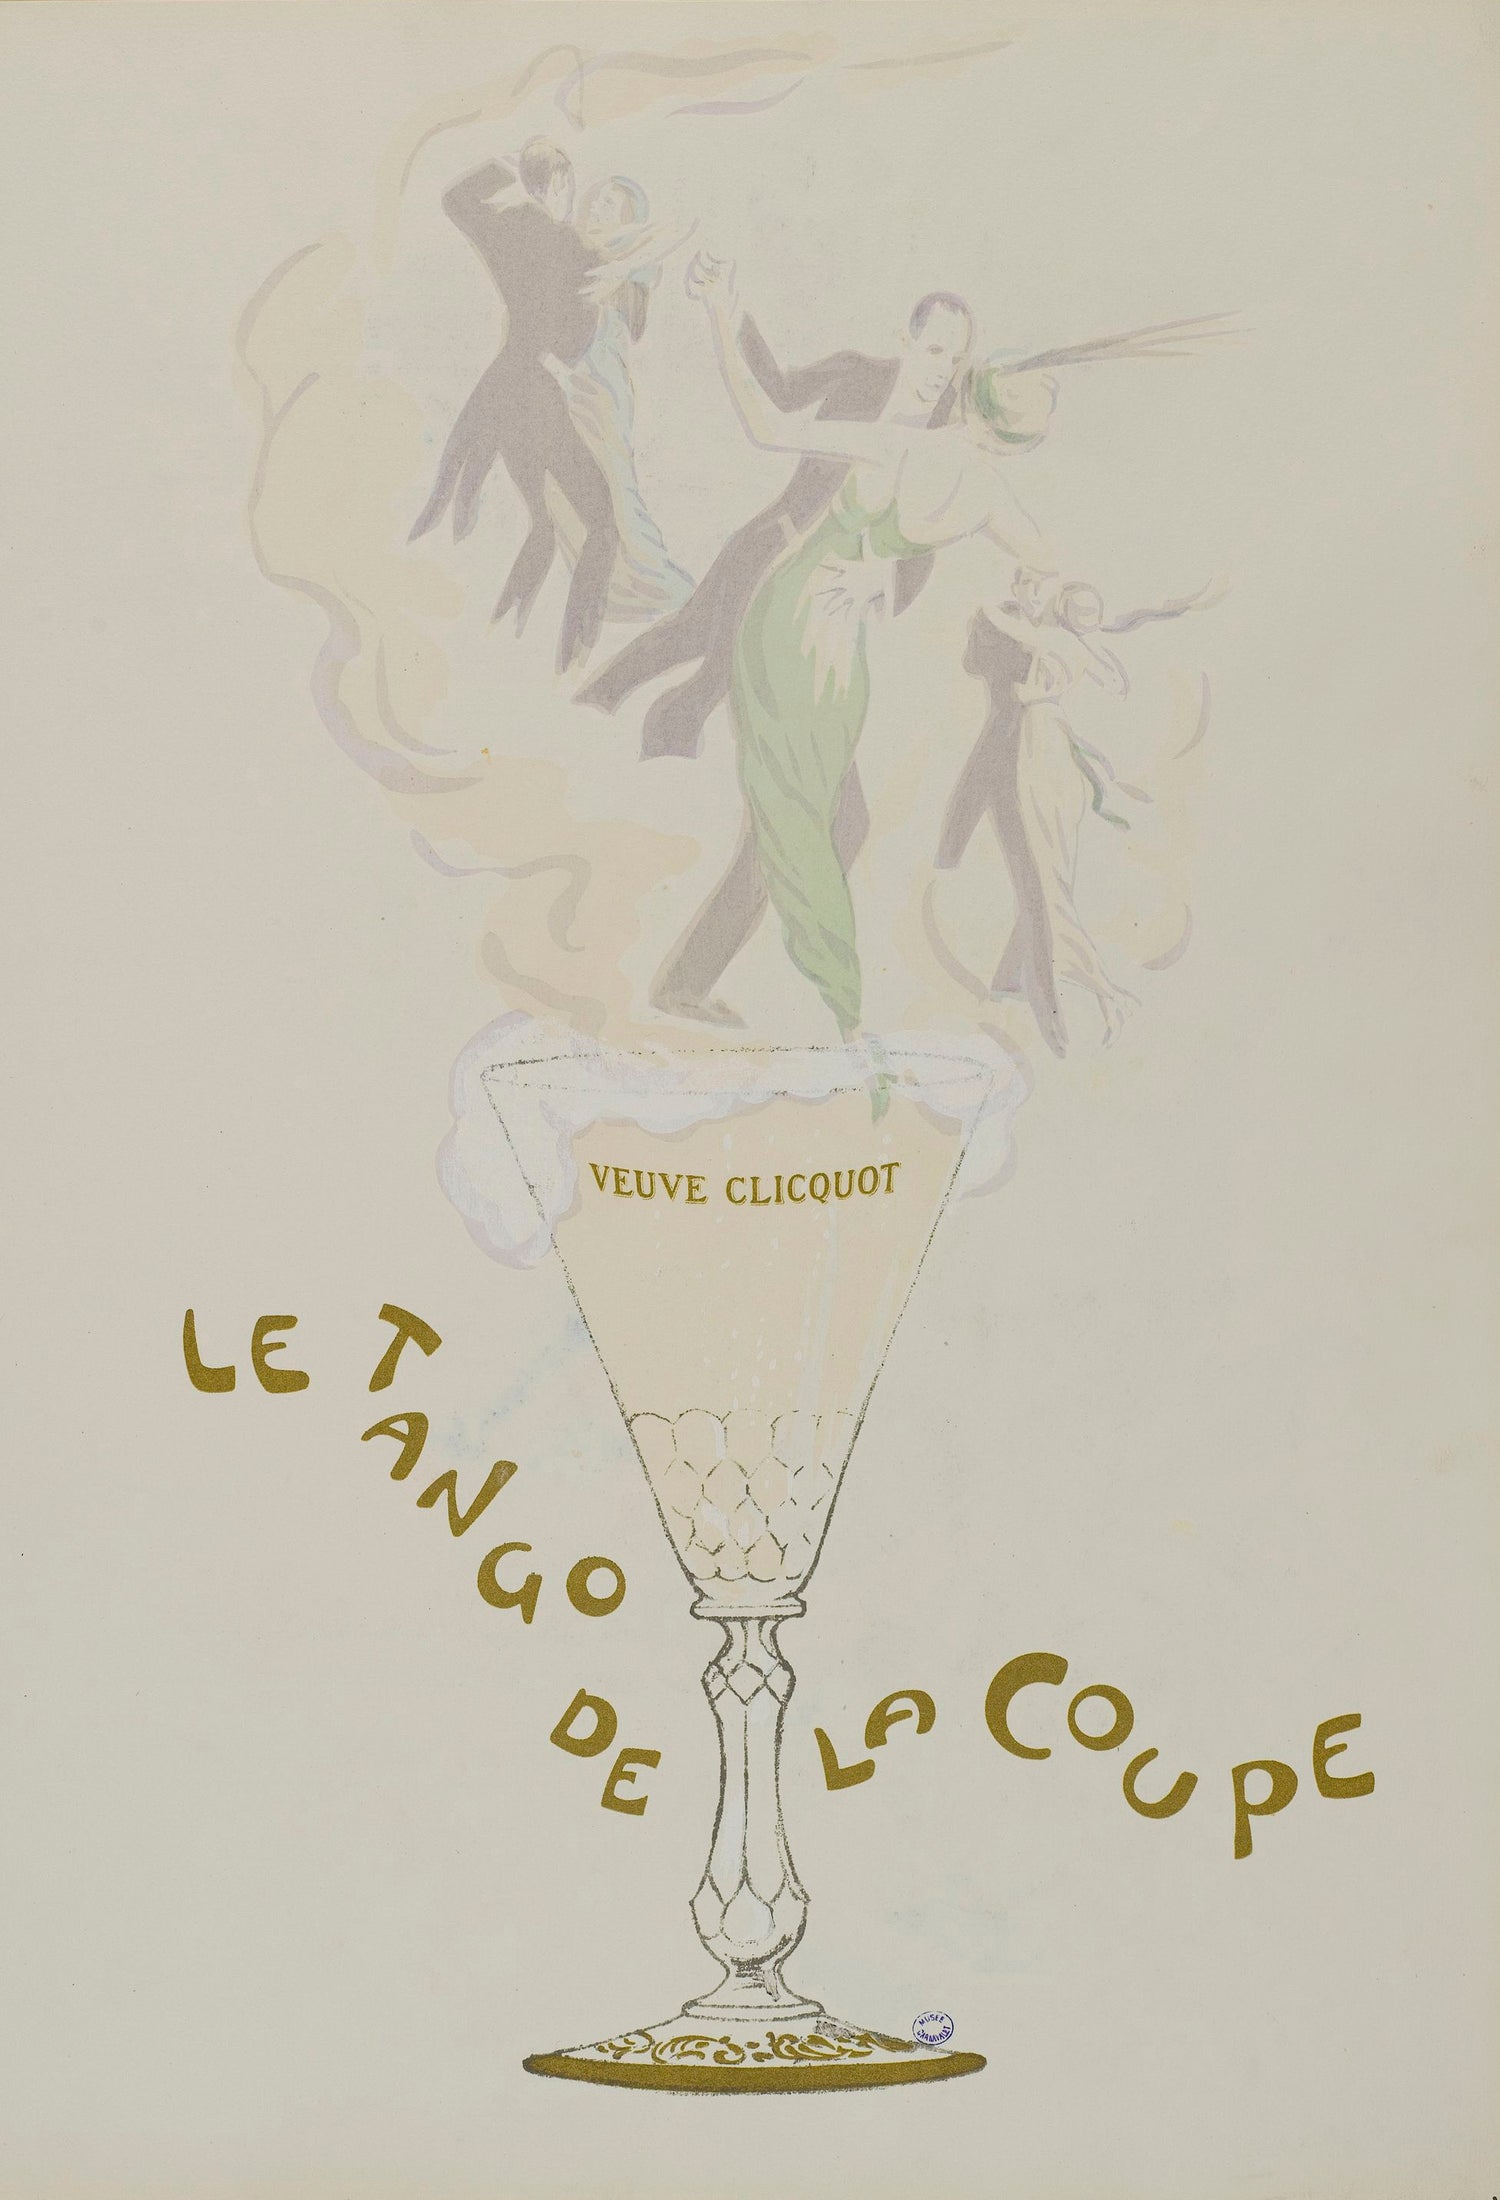 Veuve Clicquot poster “Le Tango de la coupe” (1900s) | Georges Goursat Posters, Prints, & Visual Artwork The Trumpet Shop   